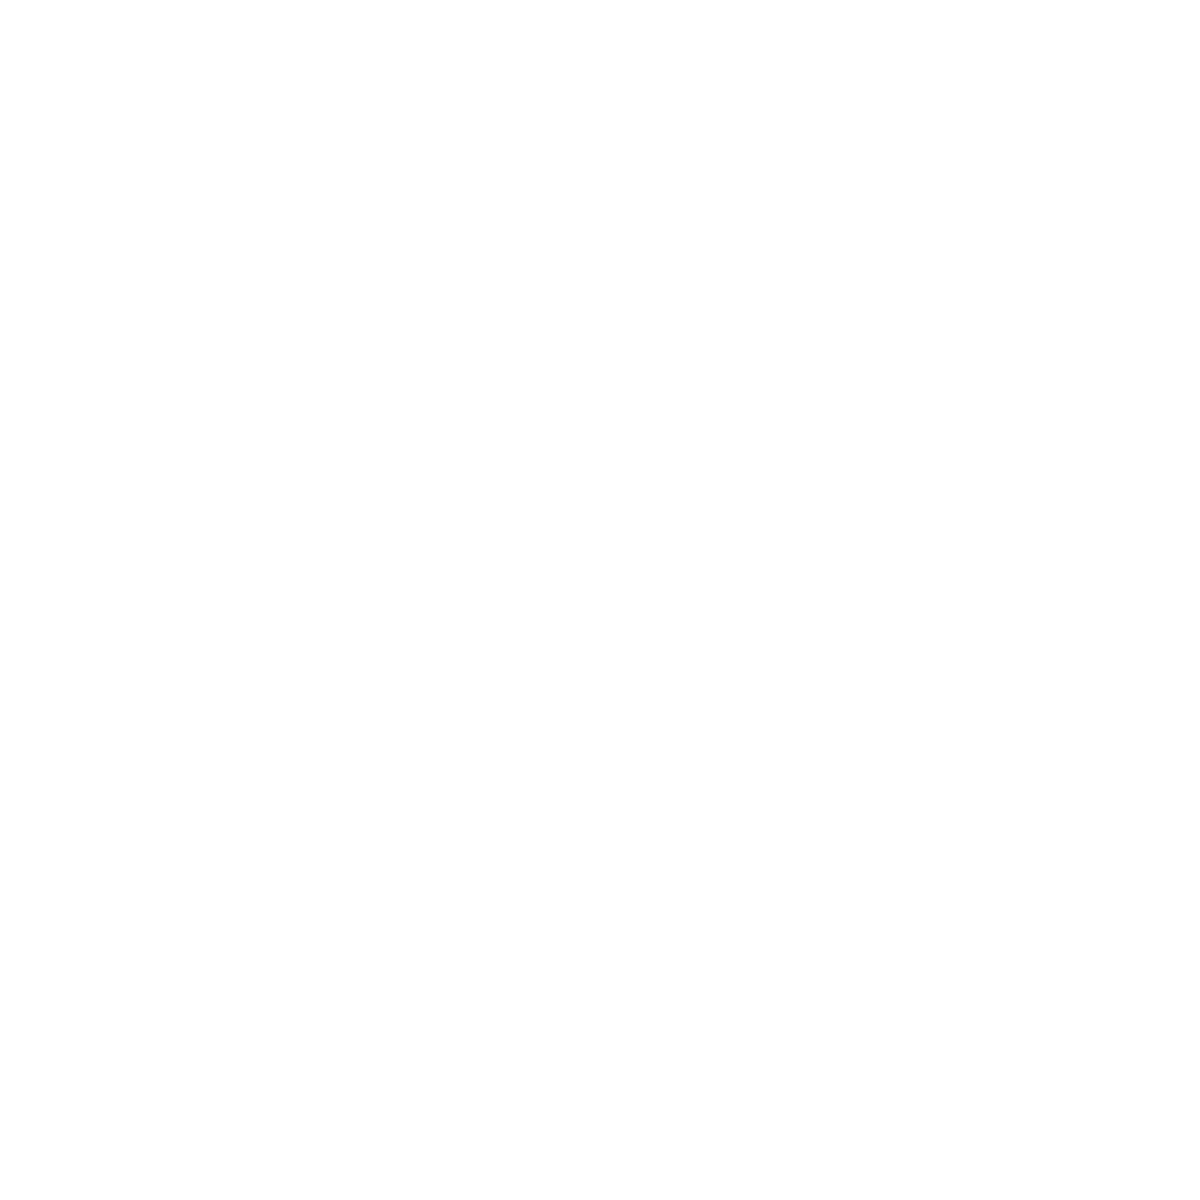 Seismic waves icon